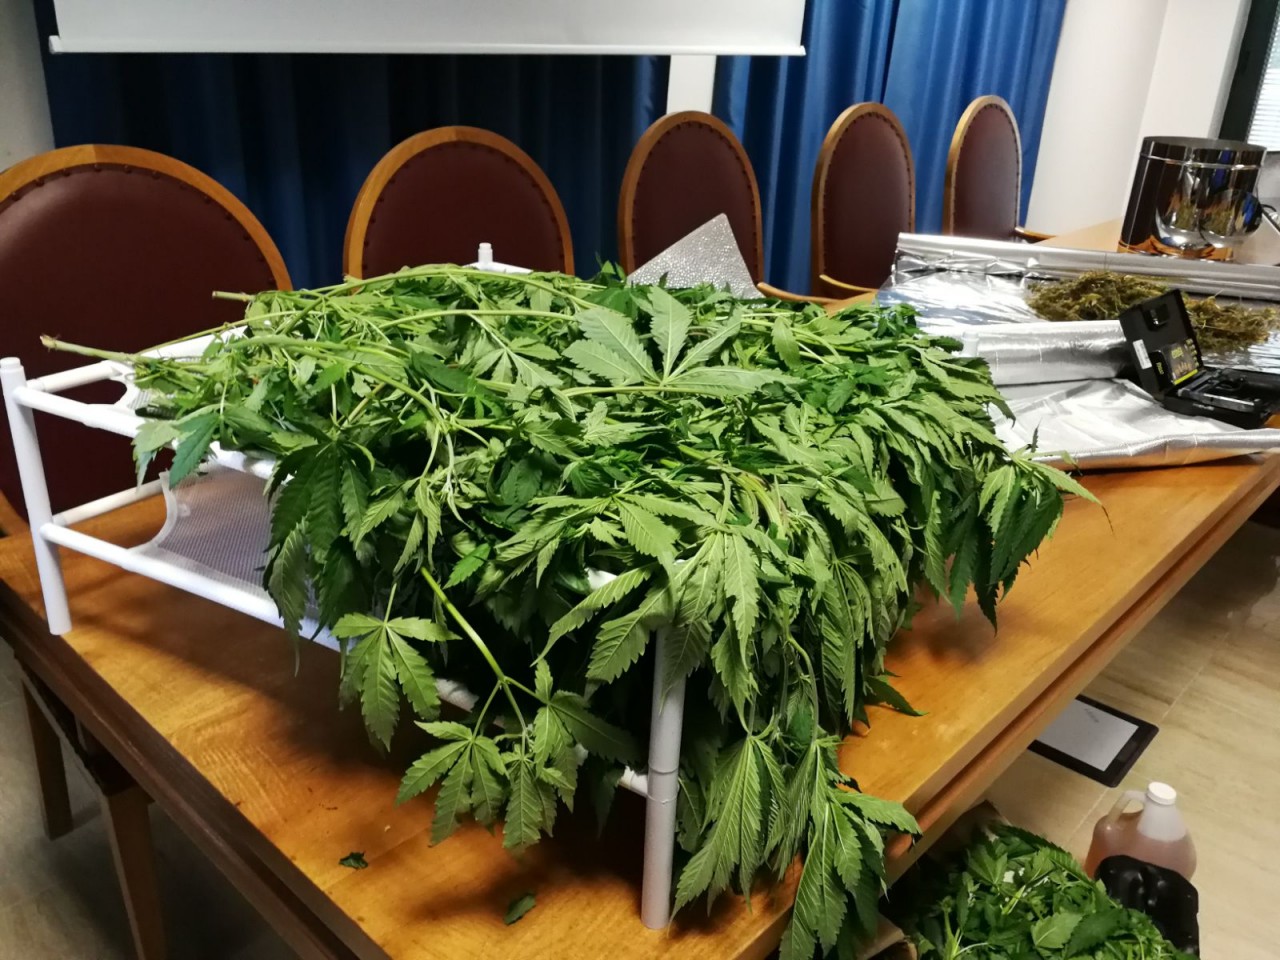 La GDF scopre nel giardino 4 kg di marijuana: denunciata donna di 34 anni